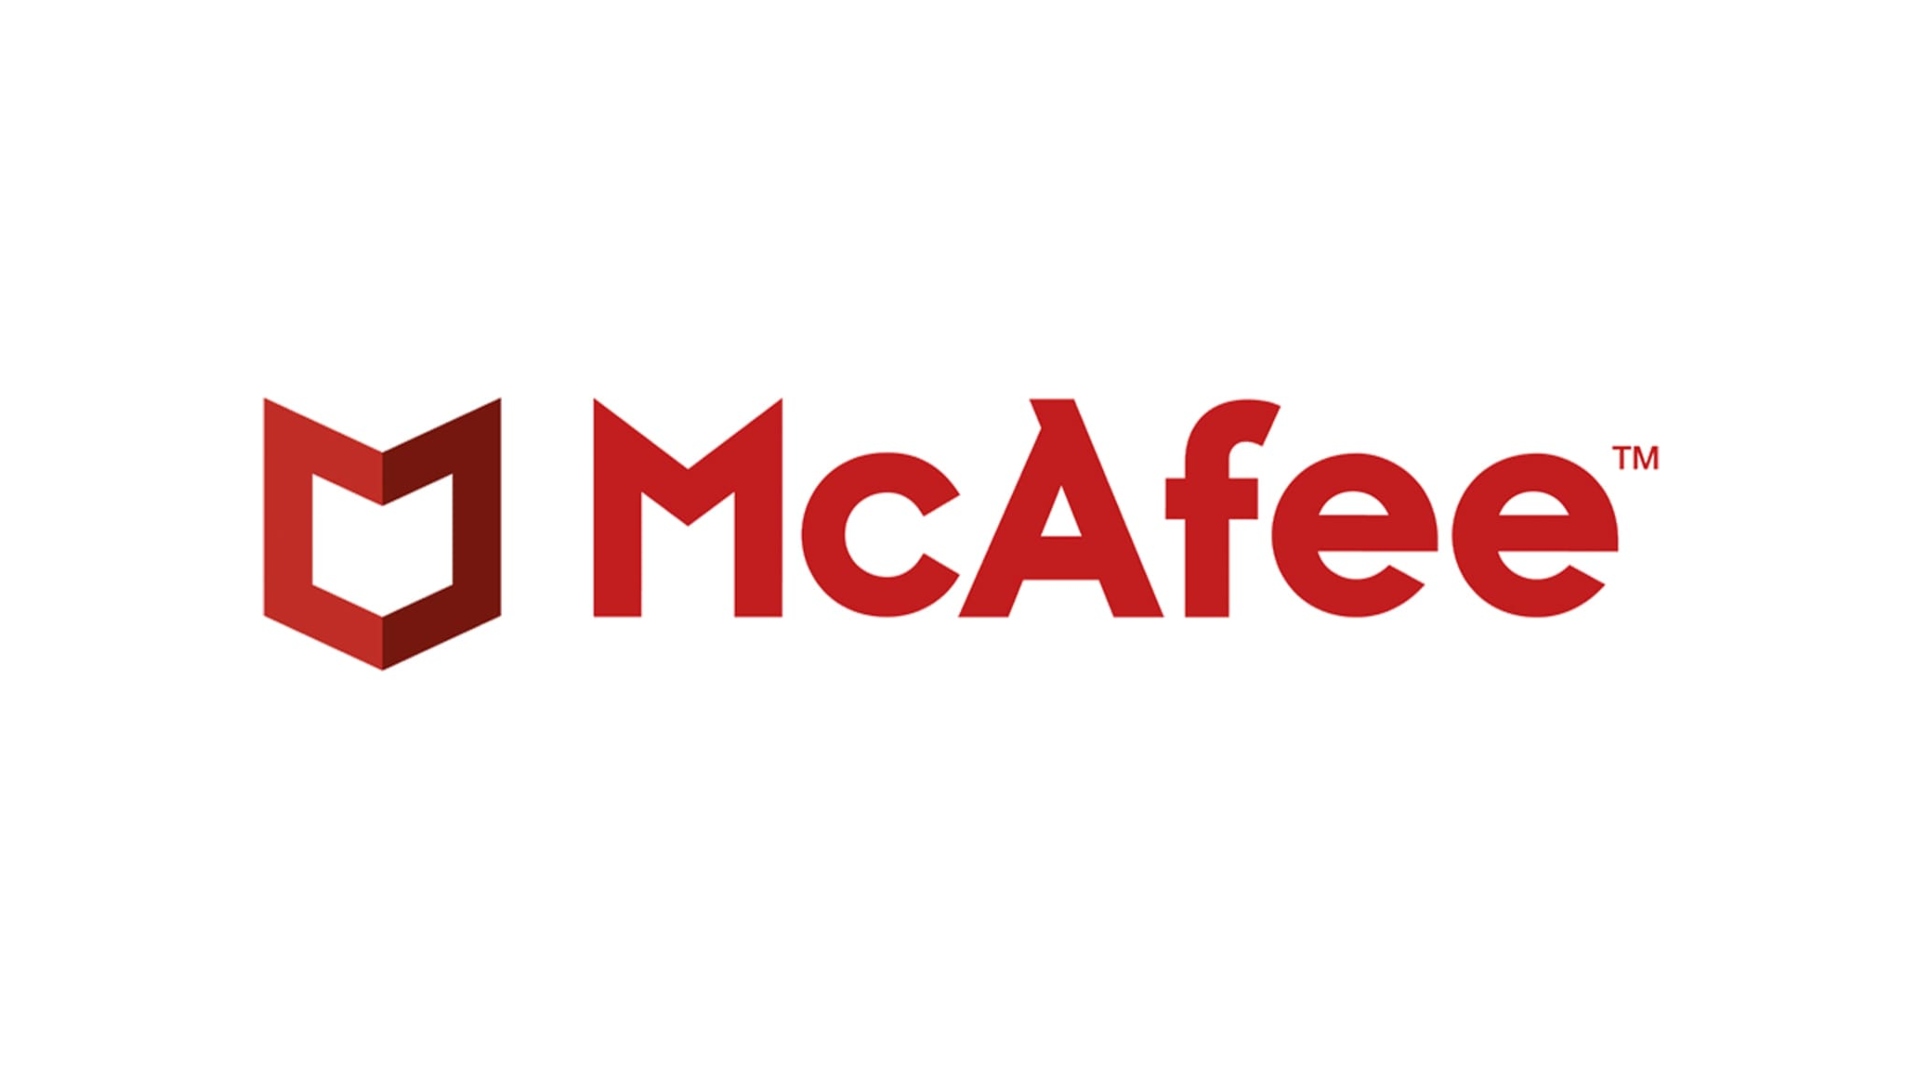 Най -добър антивирус: McAfee, написан на червено на бял фон, заедно с неговите знаци